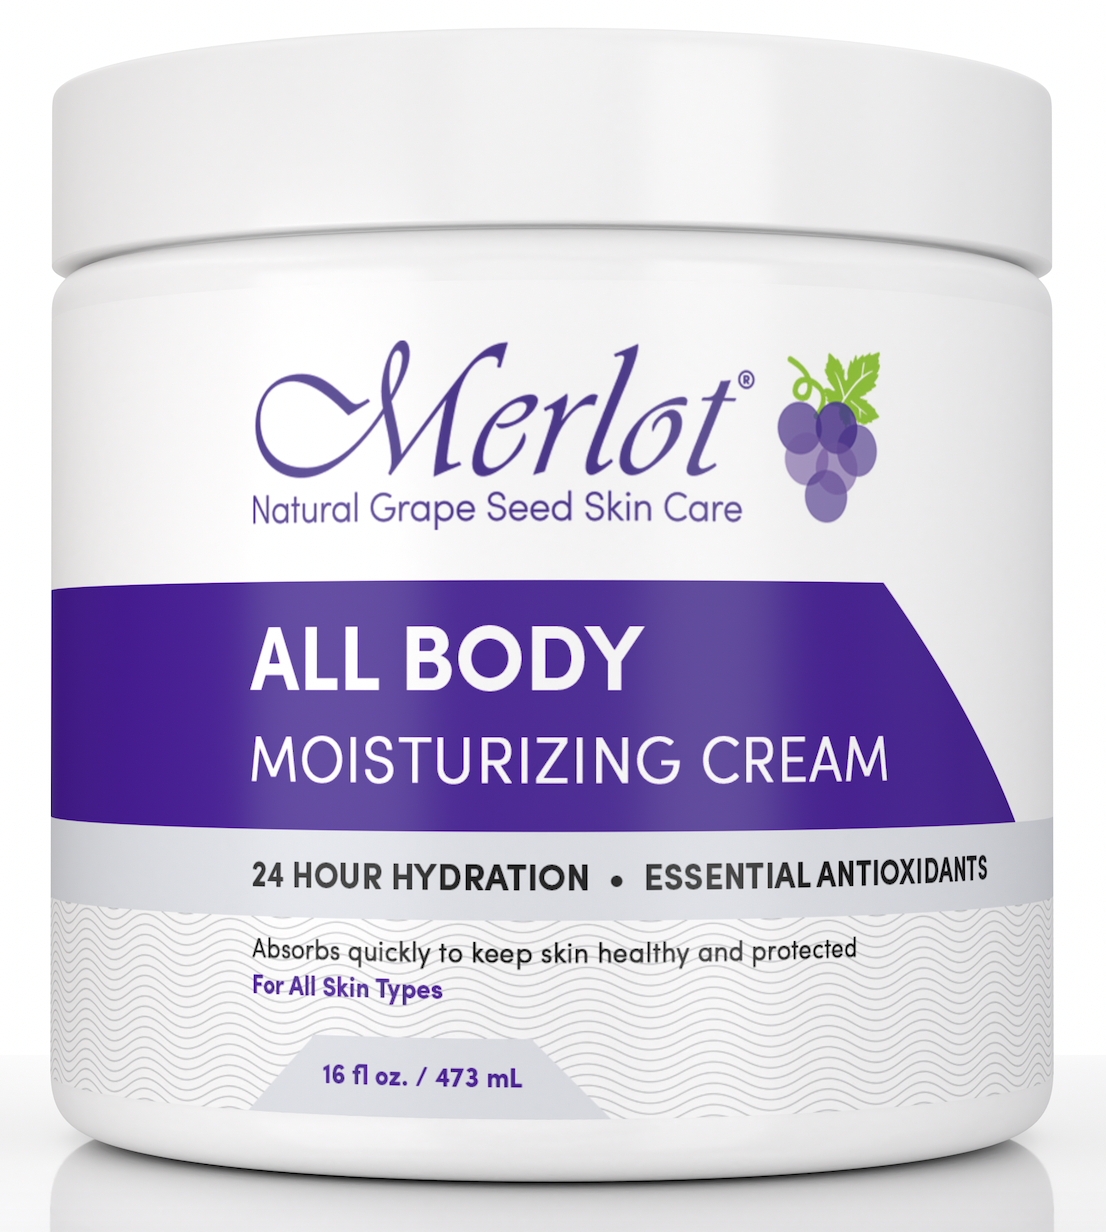 NEW: All Body Moisturizing Cream from Merlot Skin Care